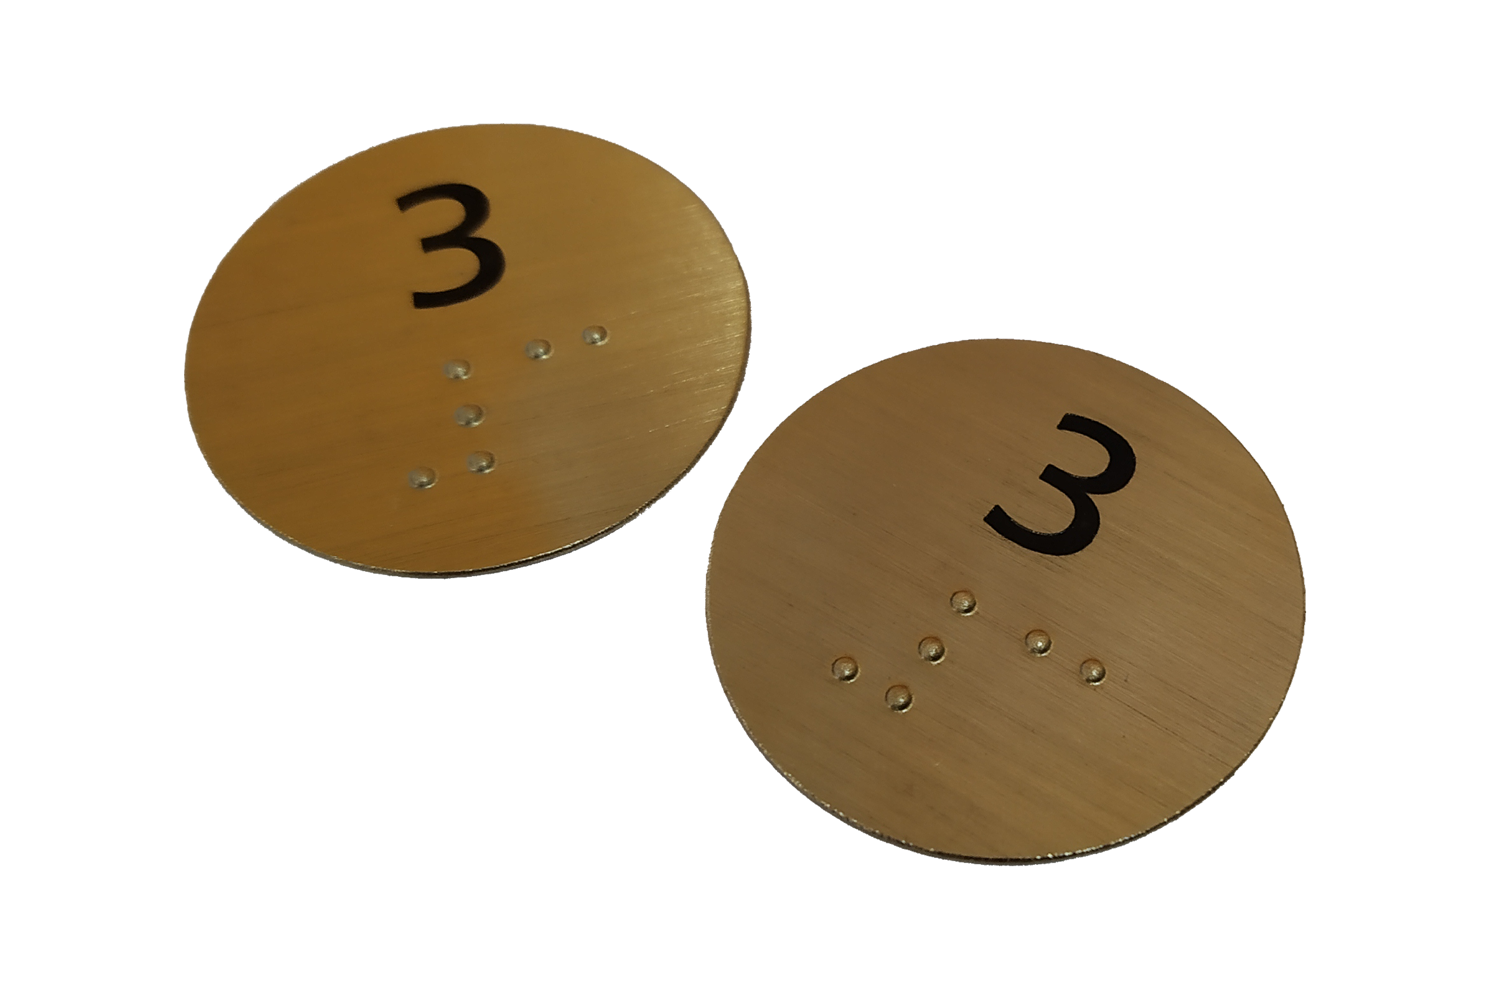 Chapas con impresión y braille para identificación accesible de butacas de un auditorio